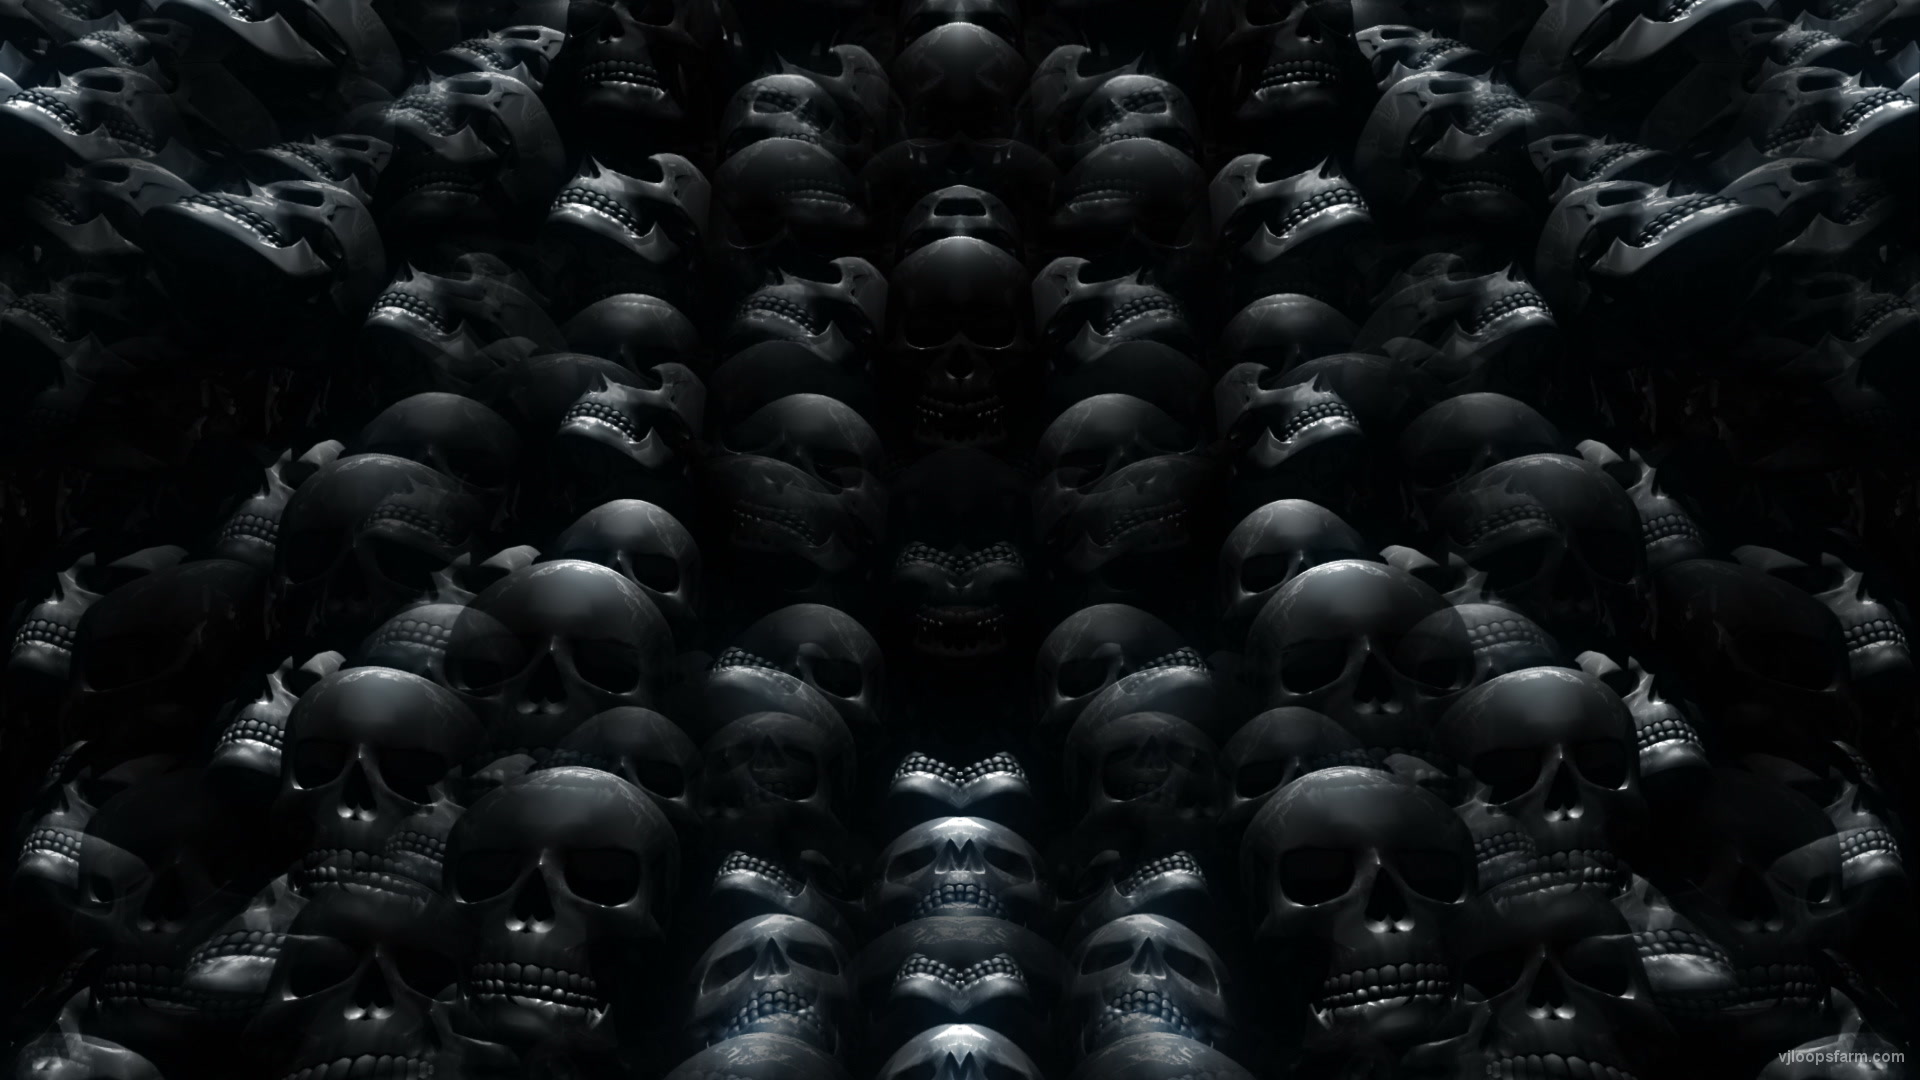 Skull Rework Black – Full HD Vj Loop